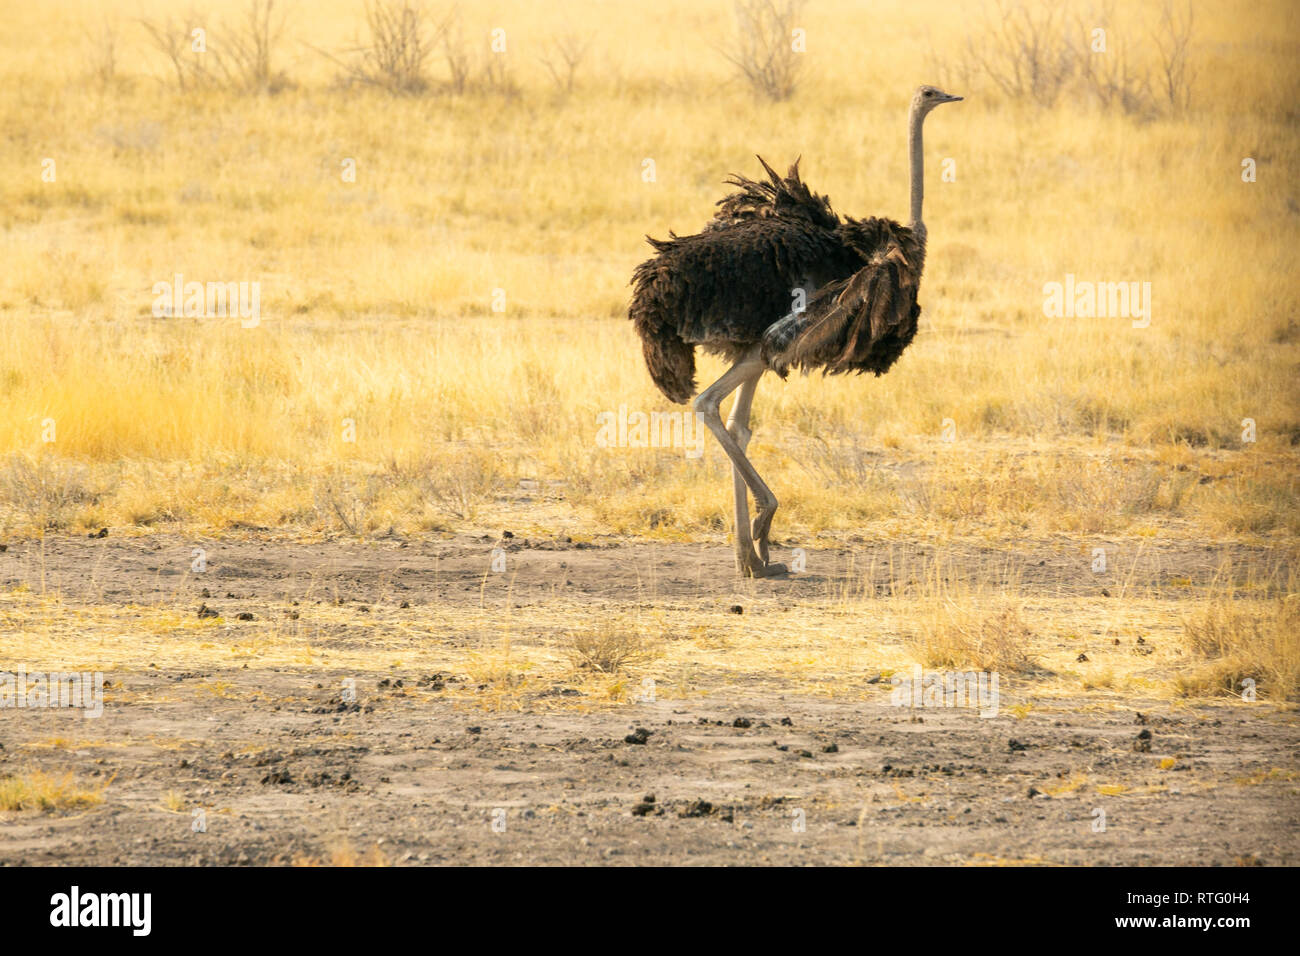 Single Strauß Stehen auf einem Bein Seite Profil Hals, Etosha National Park, Namibia Stockfoto